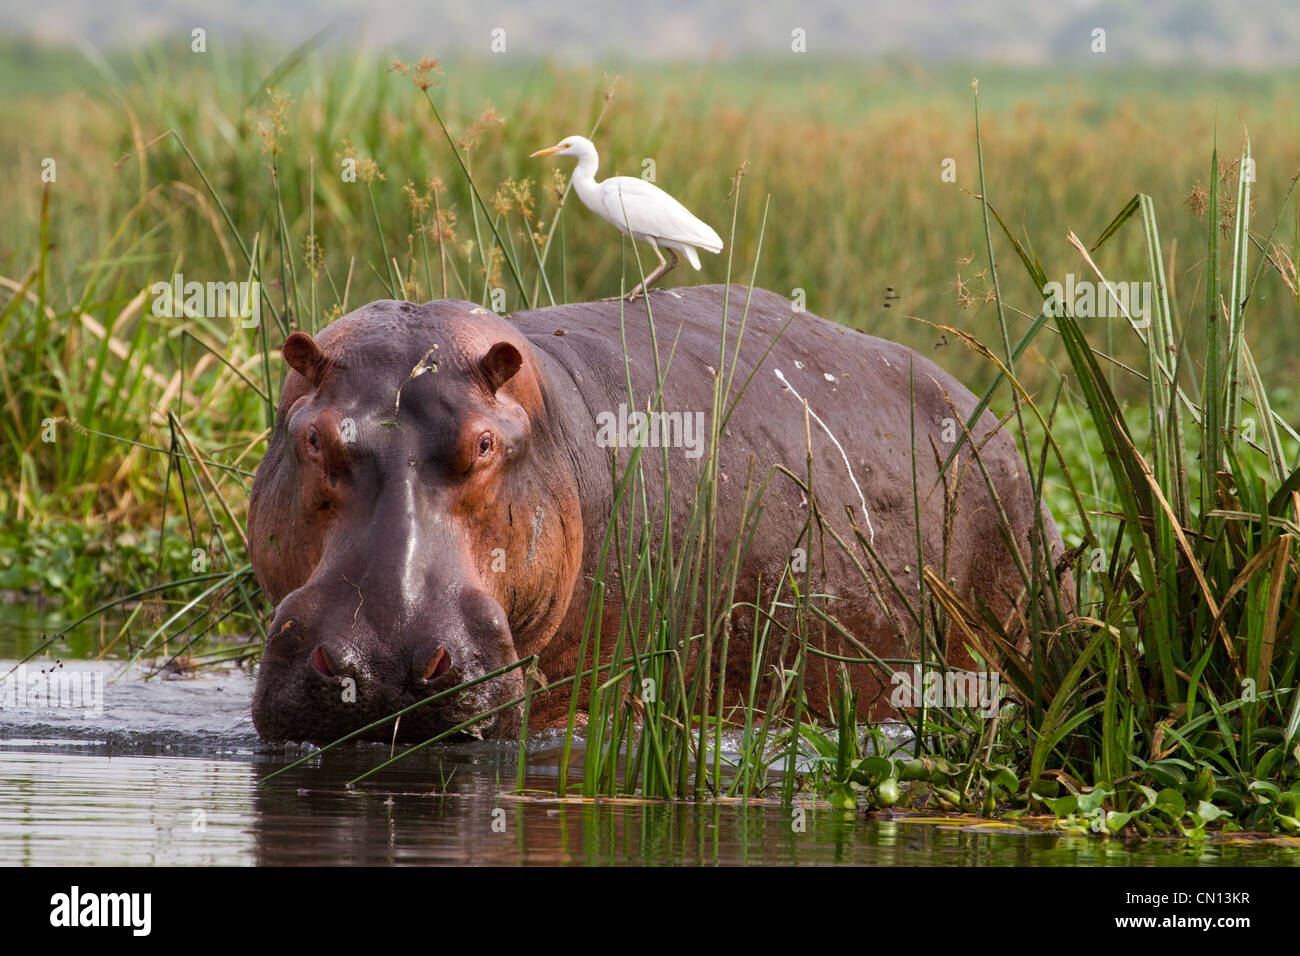 Hippopotamus (Hippopotamus amphibius) with Cattle Egret (Bubulcus ibis) in River Nile, Uganda Stock Photo